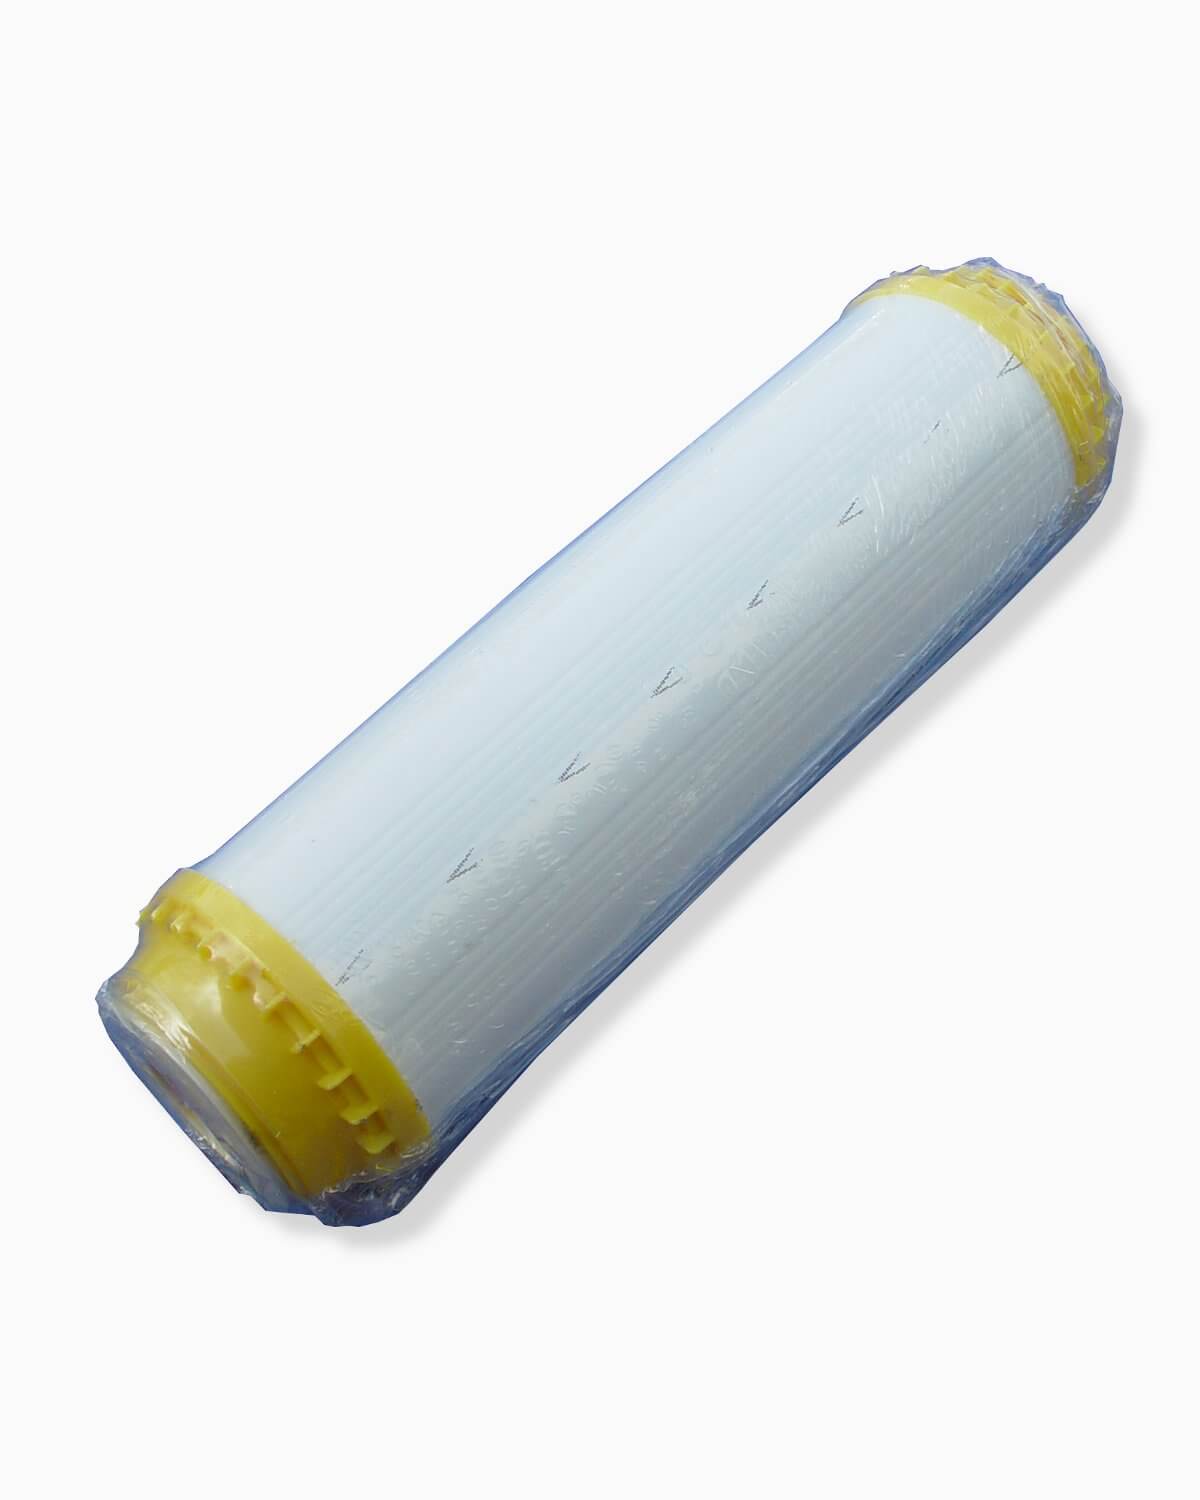 Ein Kunststoffrohr mit einem gelben PURION Vorfilter Entkalkungsrohr darauf, hergestellt von der PURION GmbH.